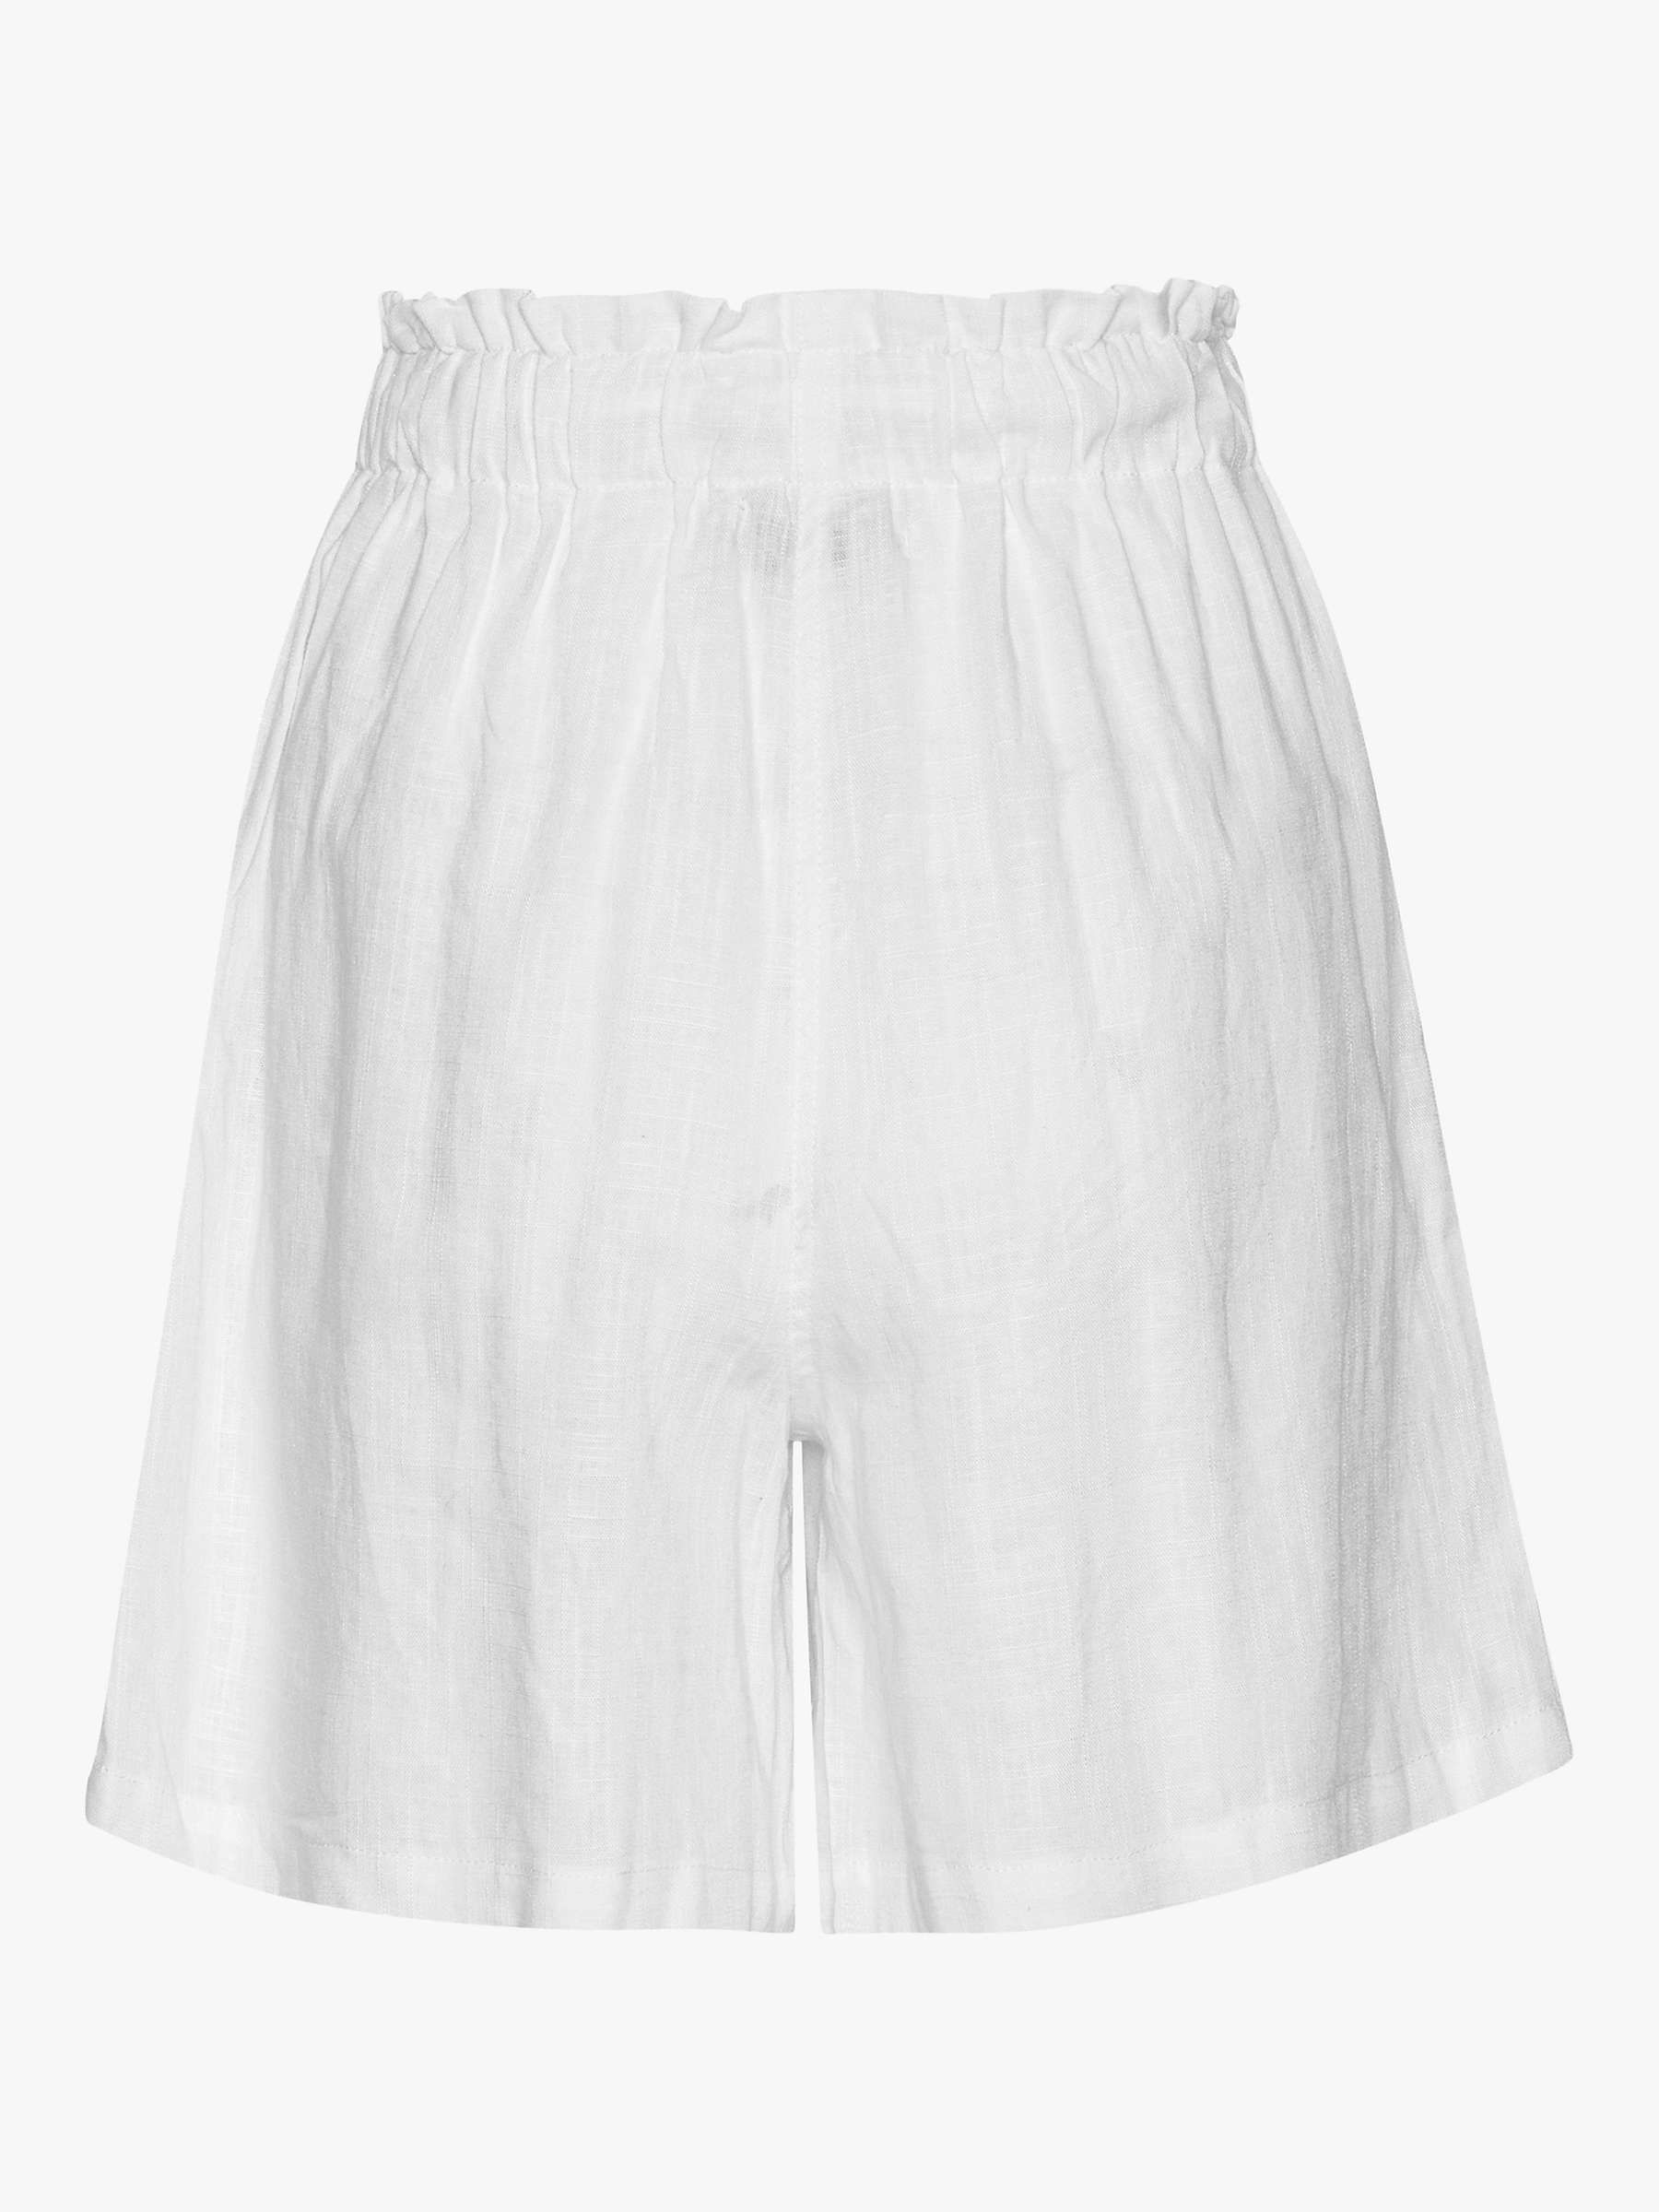 Buy A-VIEW Lerke Linen Blend Shorts Online at johnlewis.com